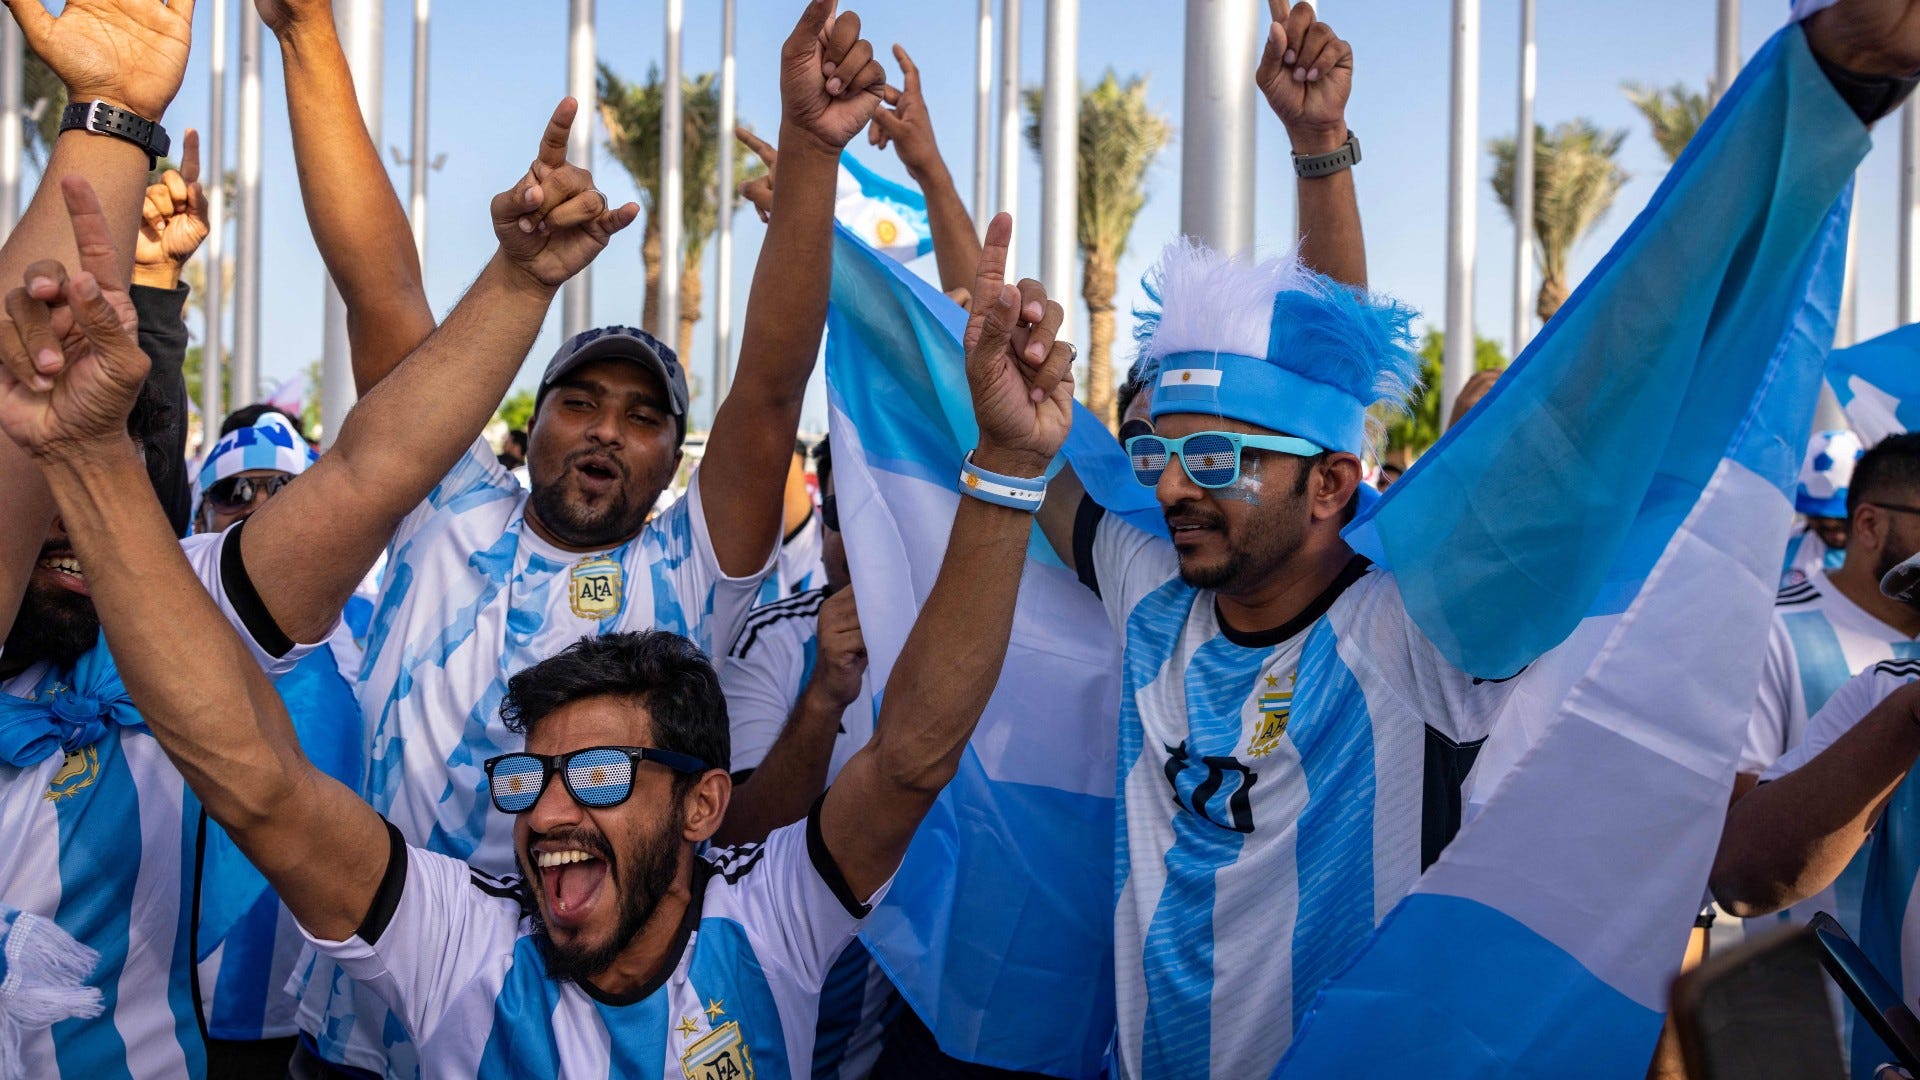 Argentina fans celebrating